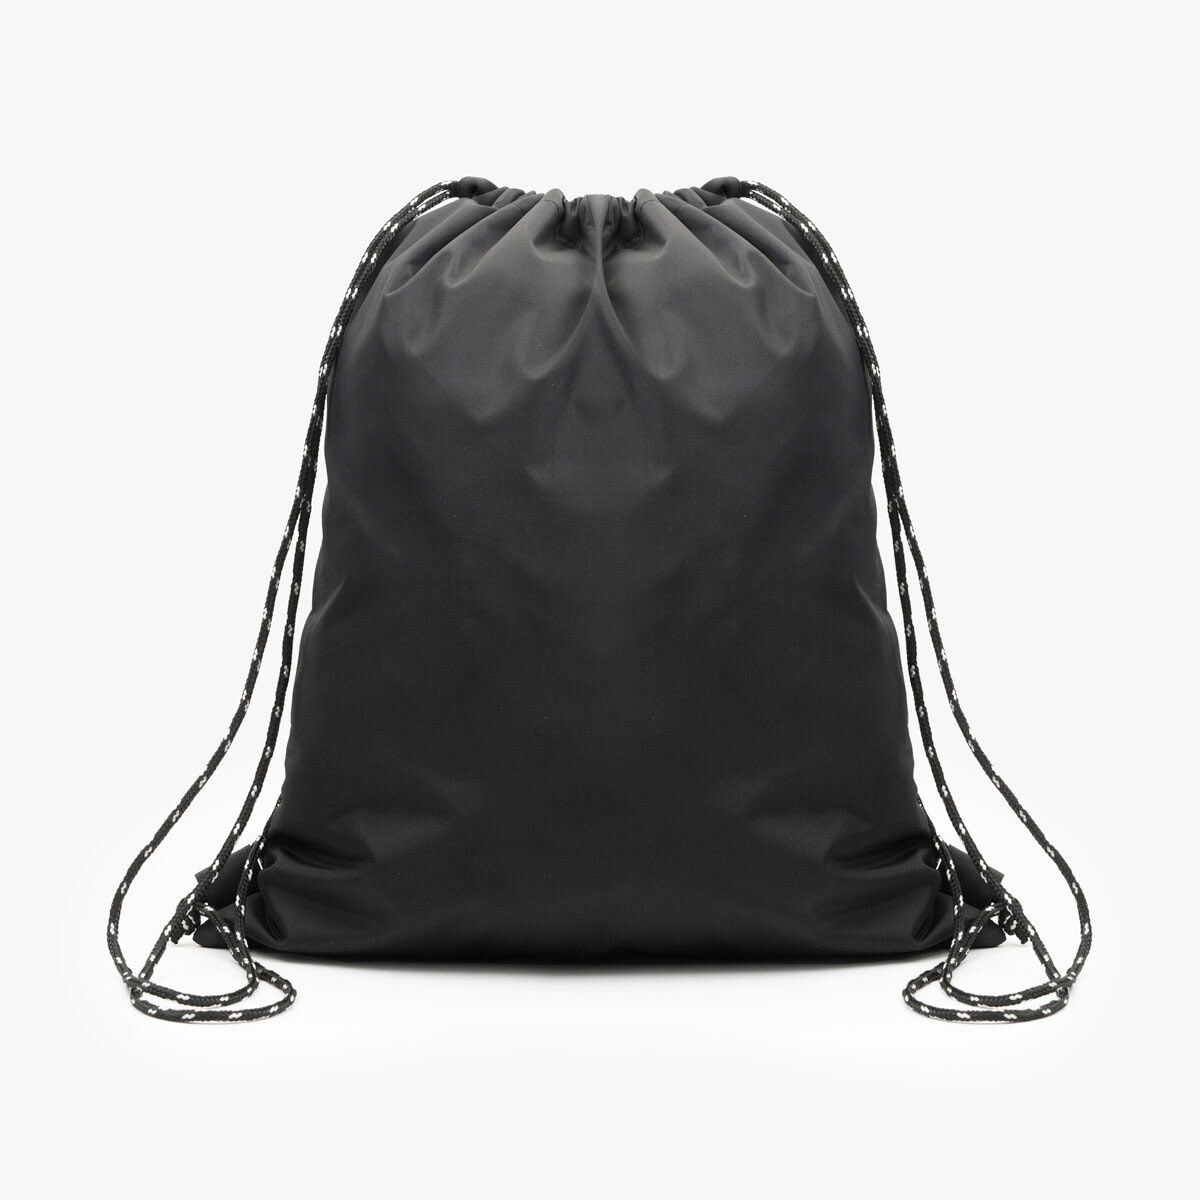 Nylon Drawstring Bag in Black